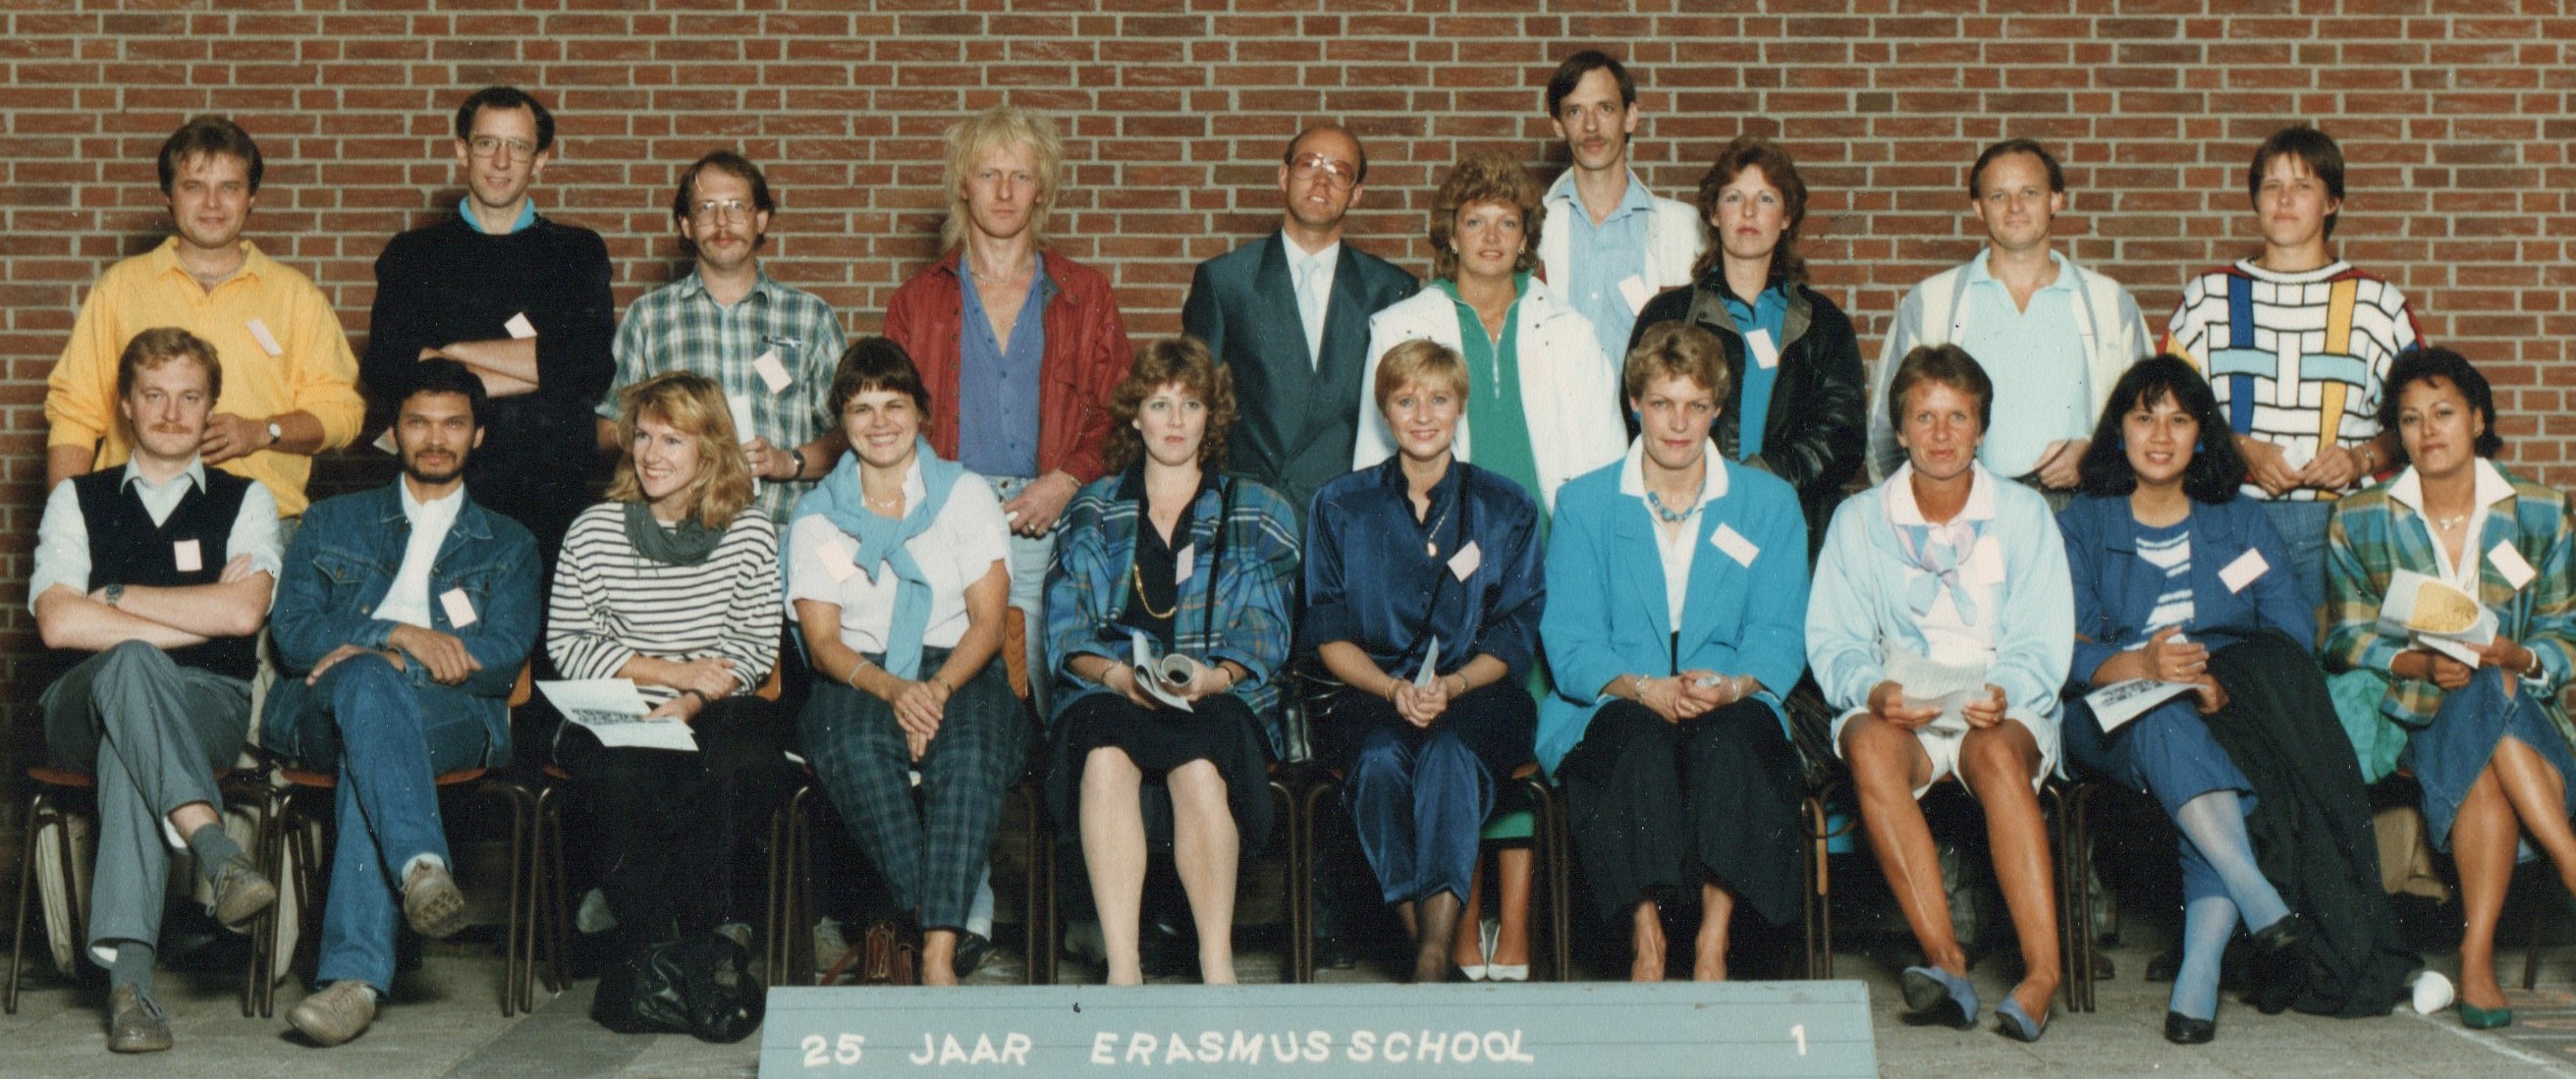 Erasmusschool foto